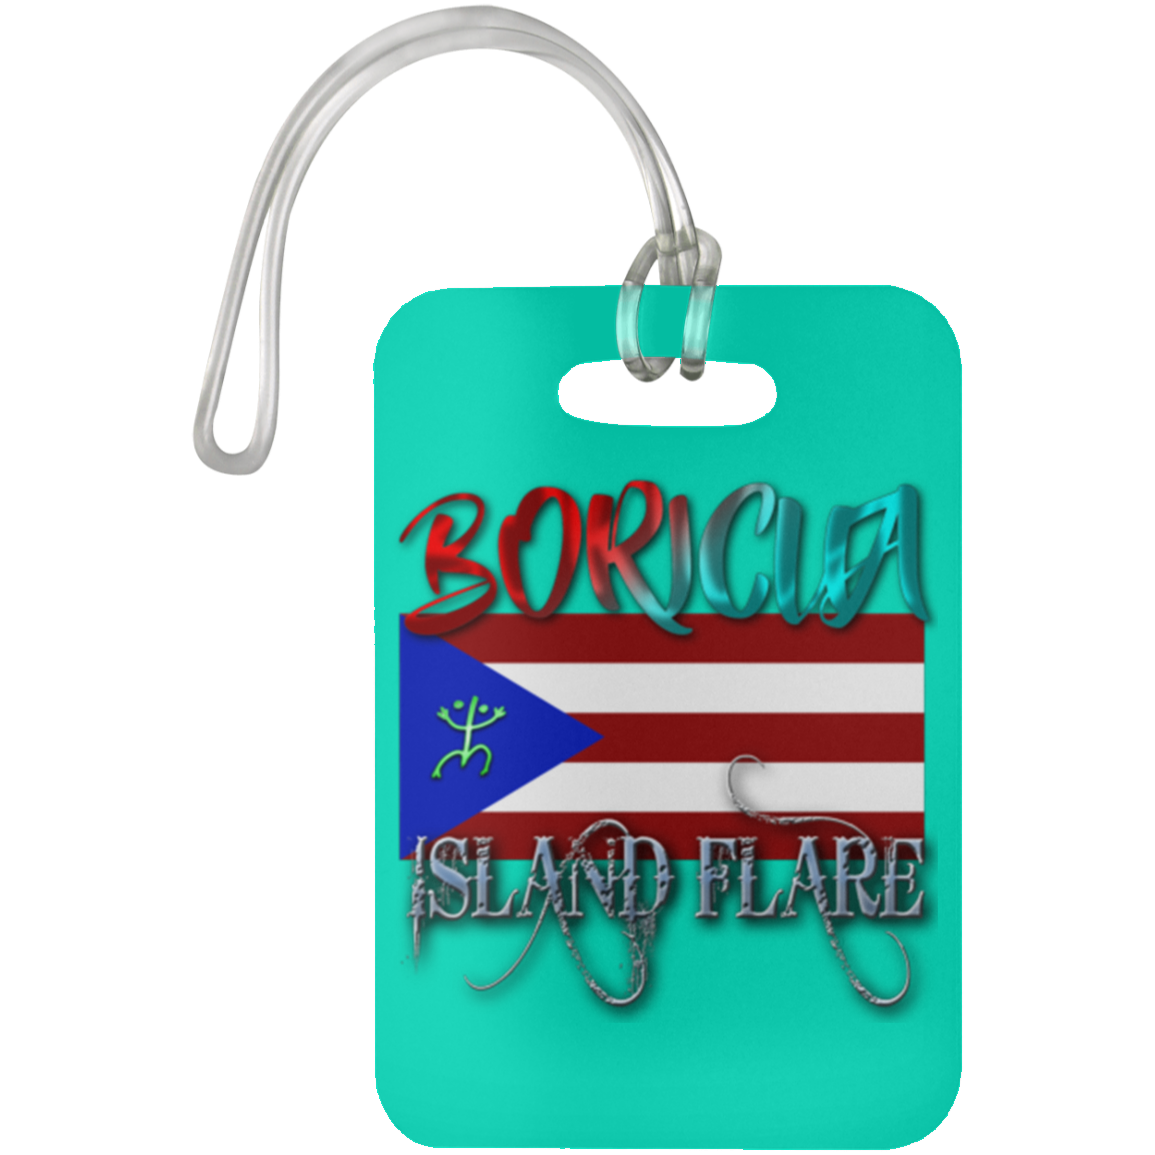 Boricua Island Flare - Puerto Rico Luggage Bag Tag